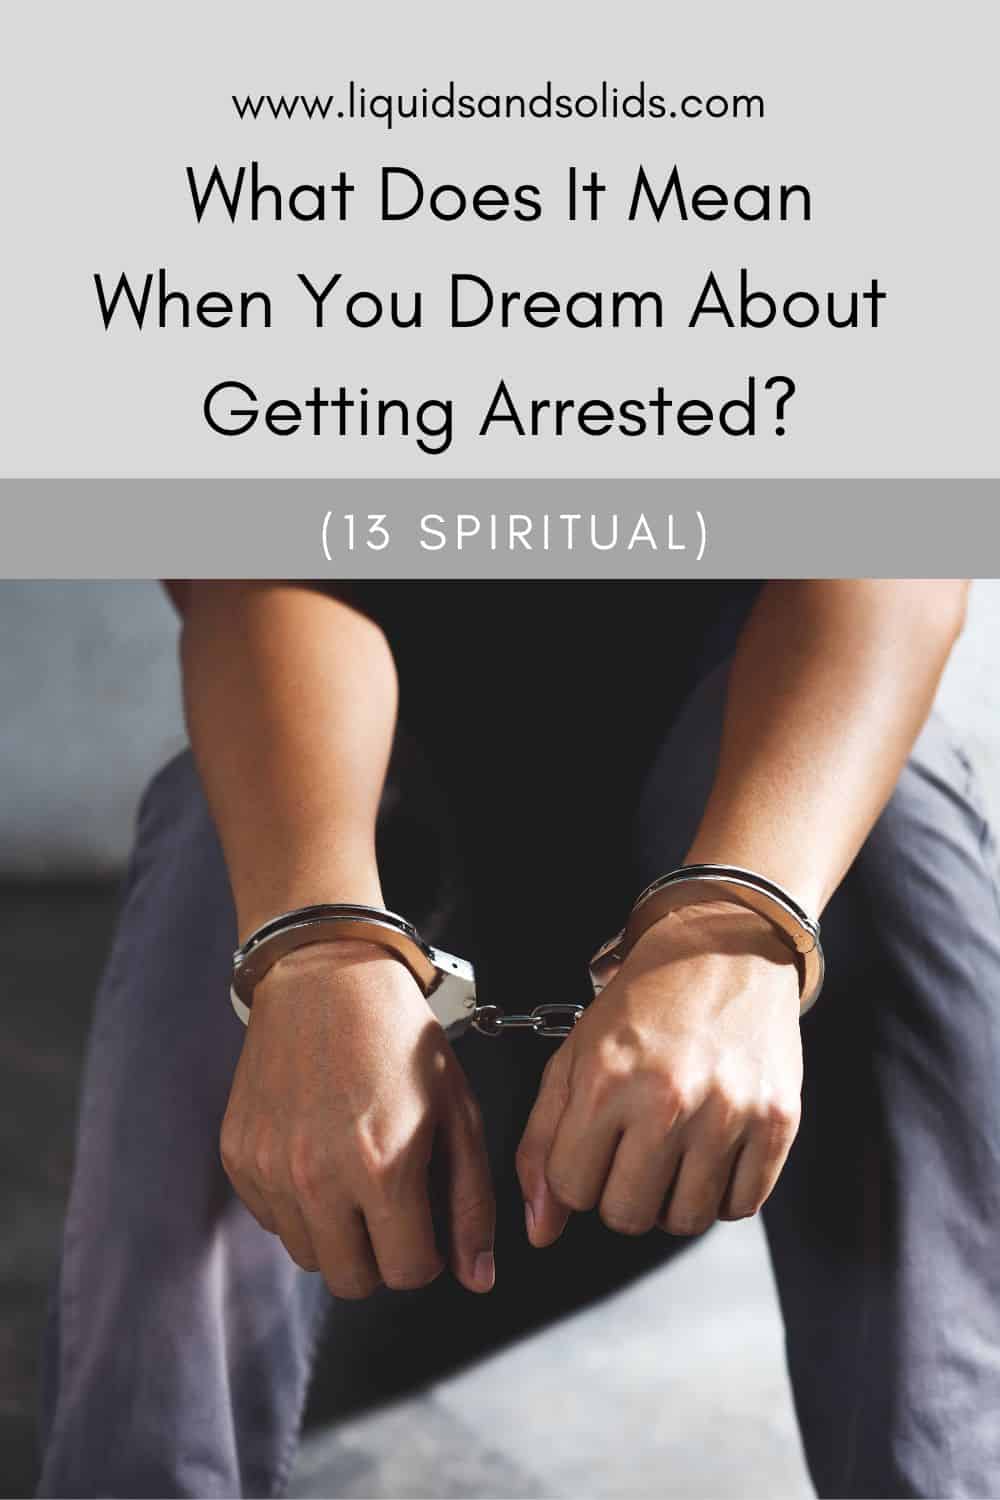  Álom a letartóztatásról? (13 spirituális jelentés)